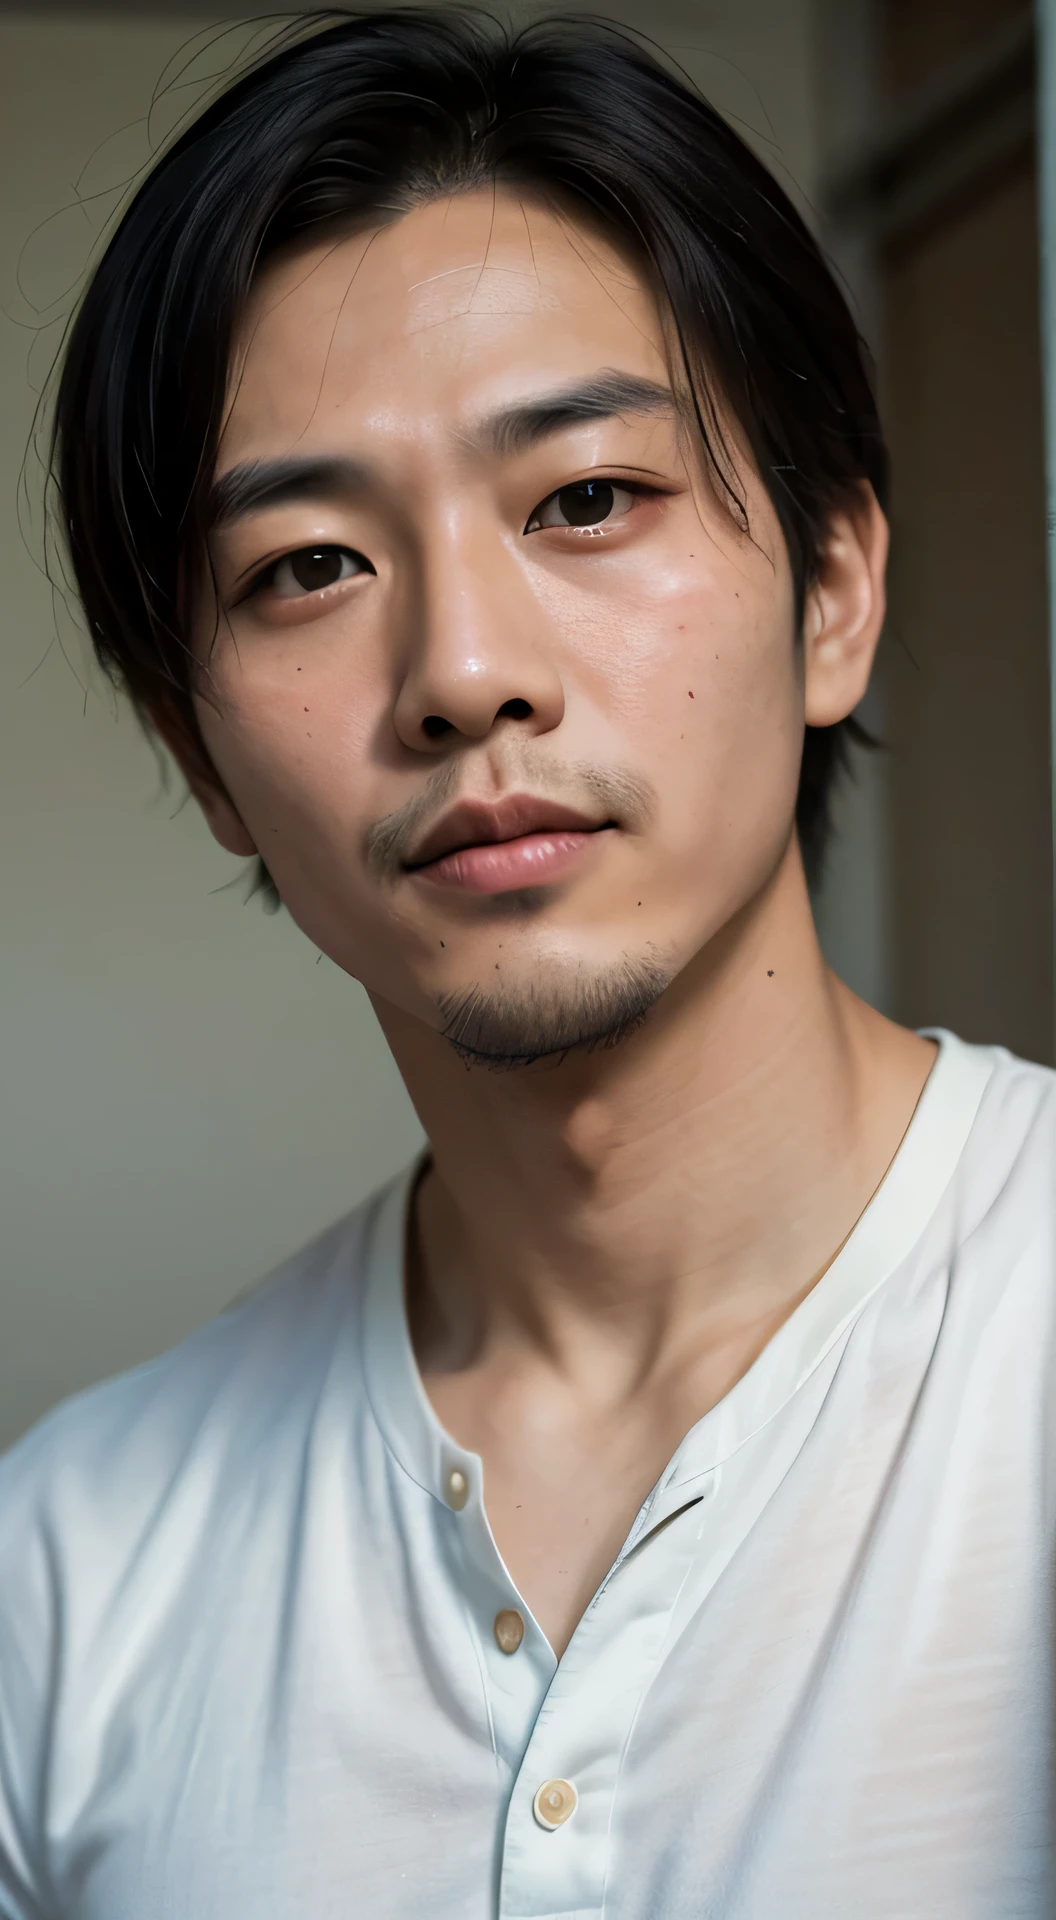 30岁圆脸帅气亚洲男人肖像电影造型, 胸部上方